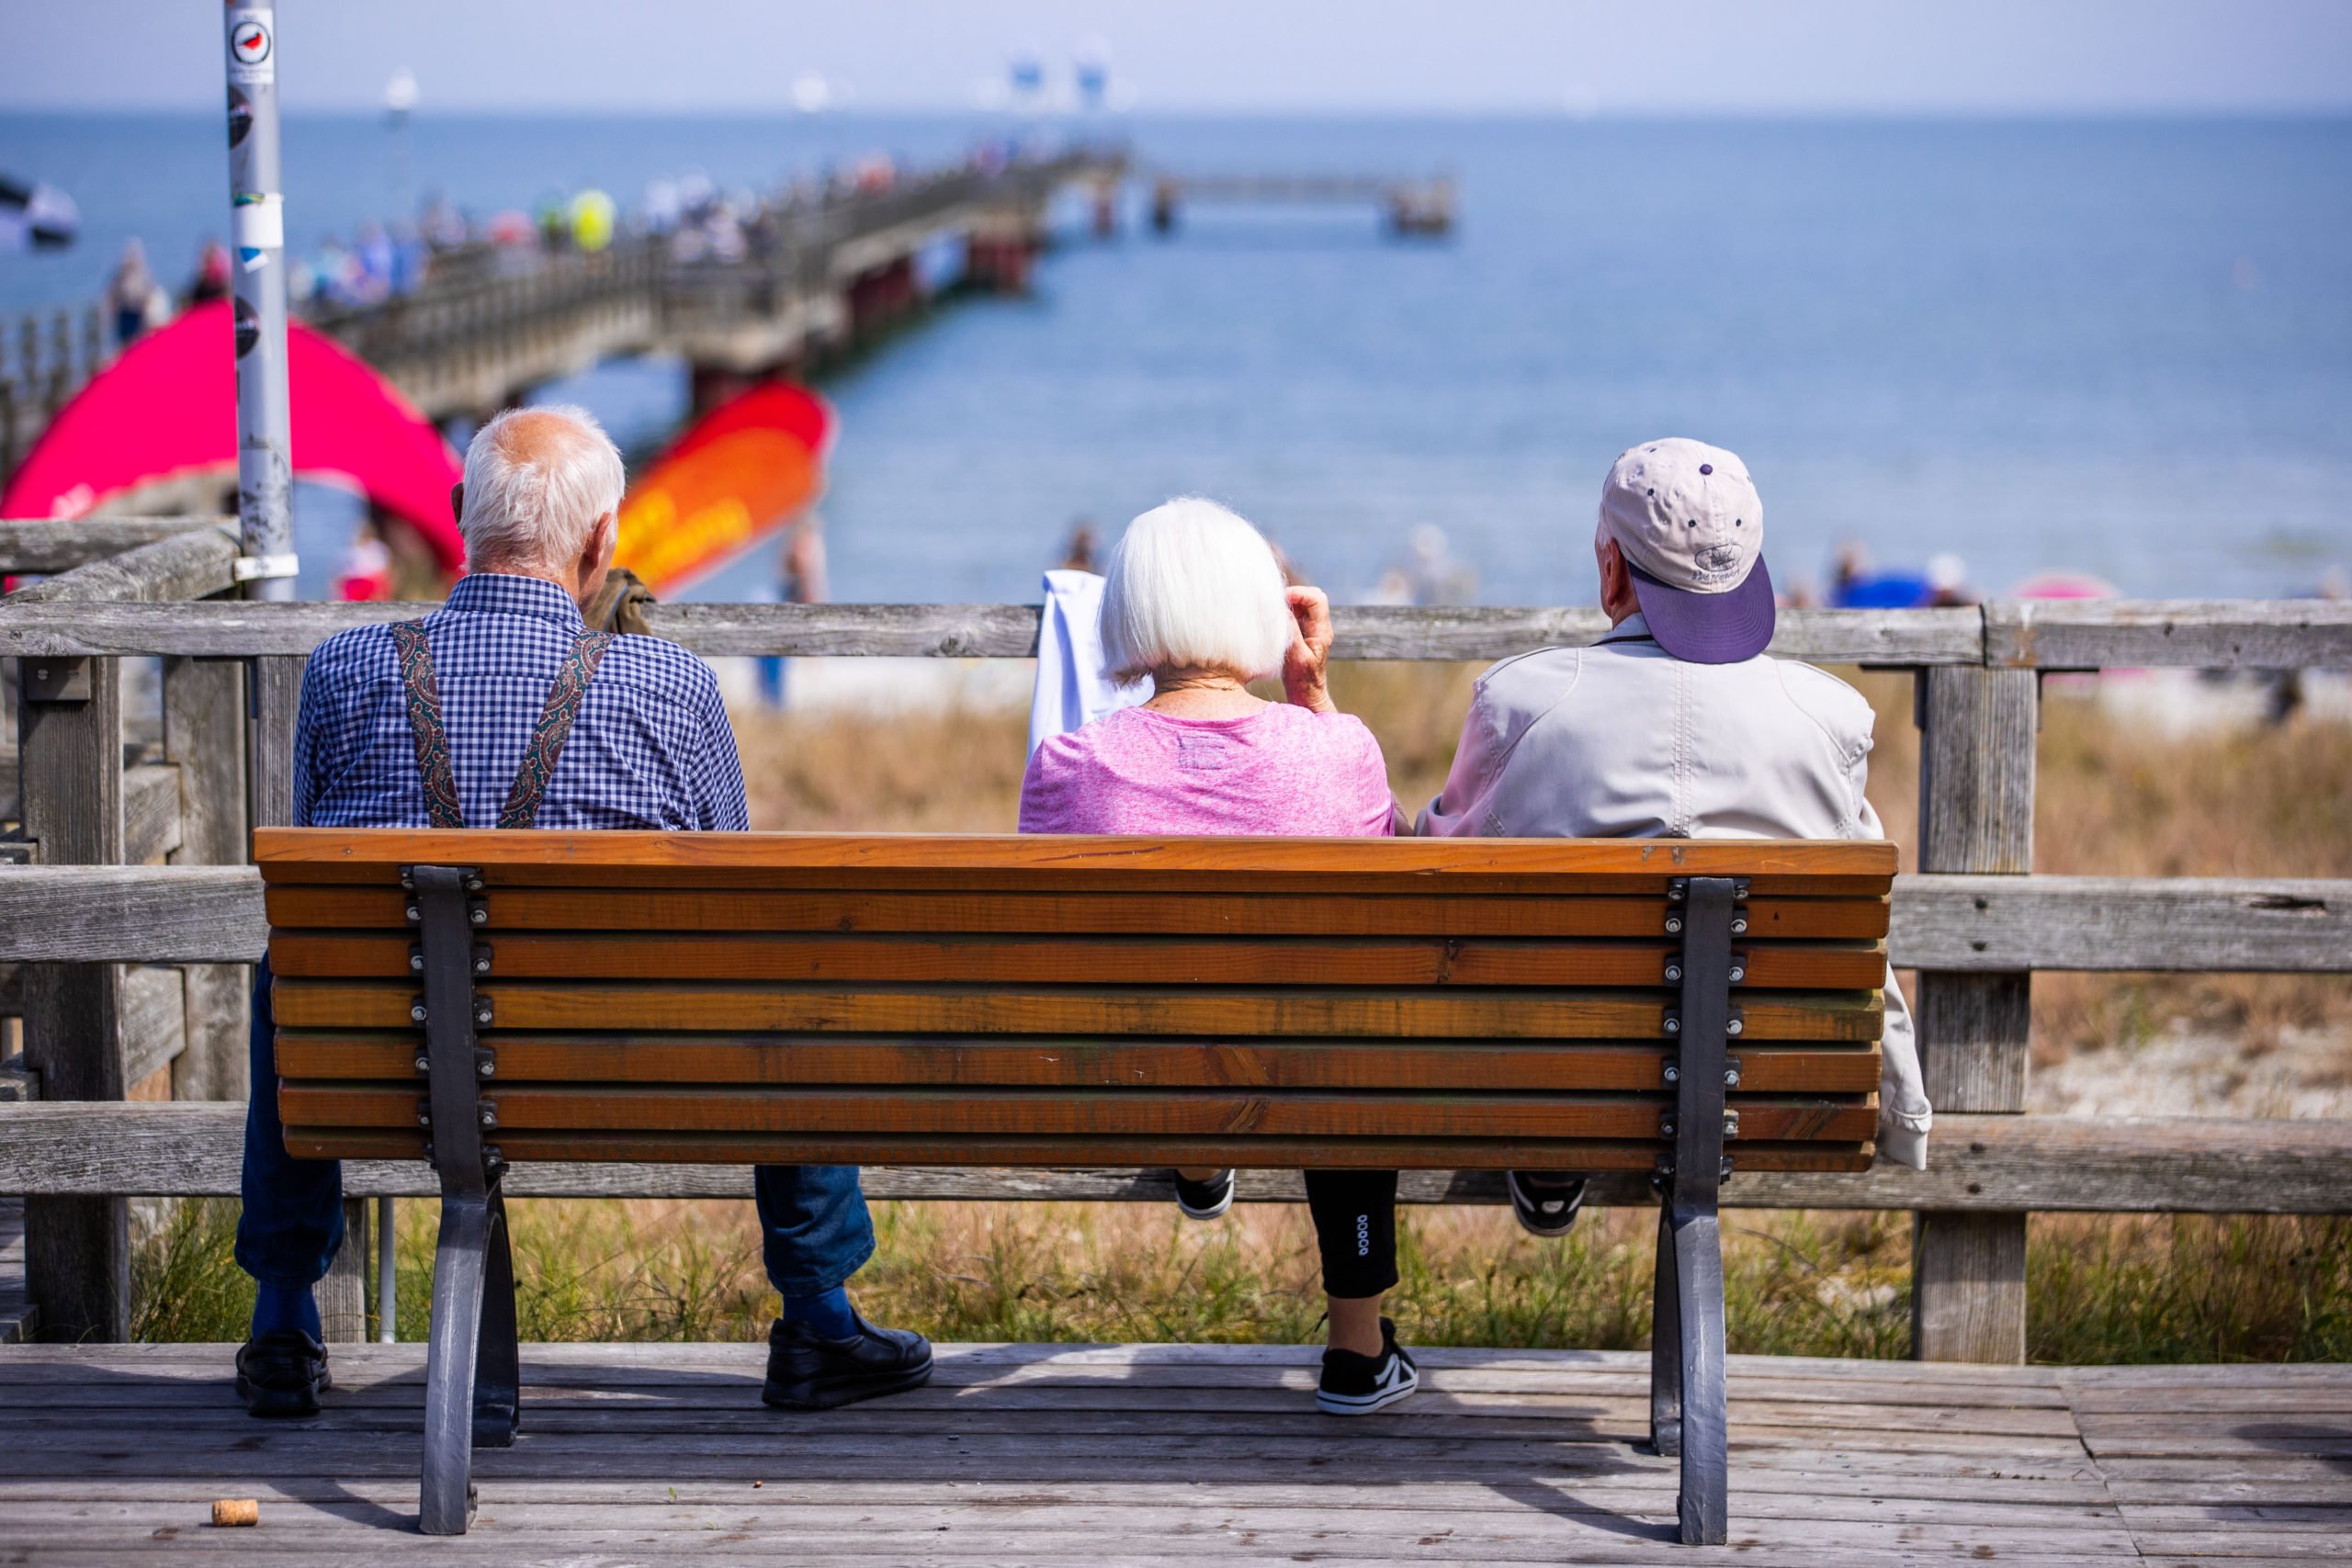 Pertanyaan pembaca: Akankah pensiunan mendapat manfaat dari paket bantuan energi Jerman?